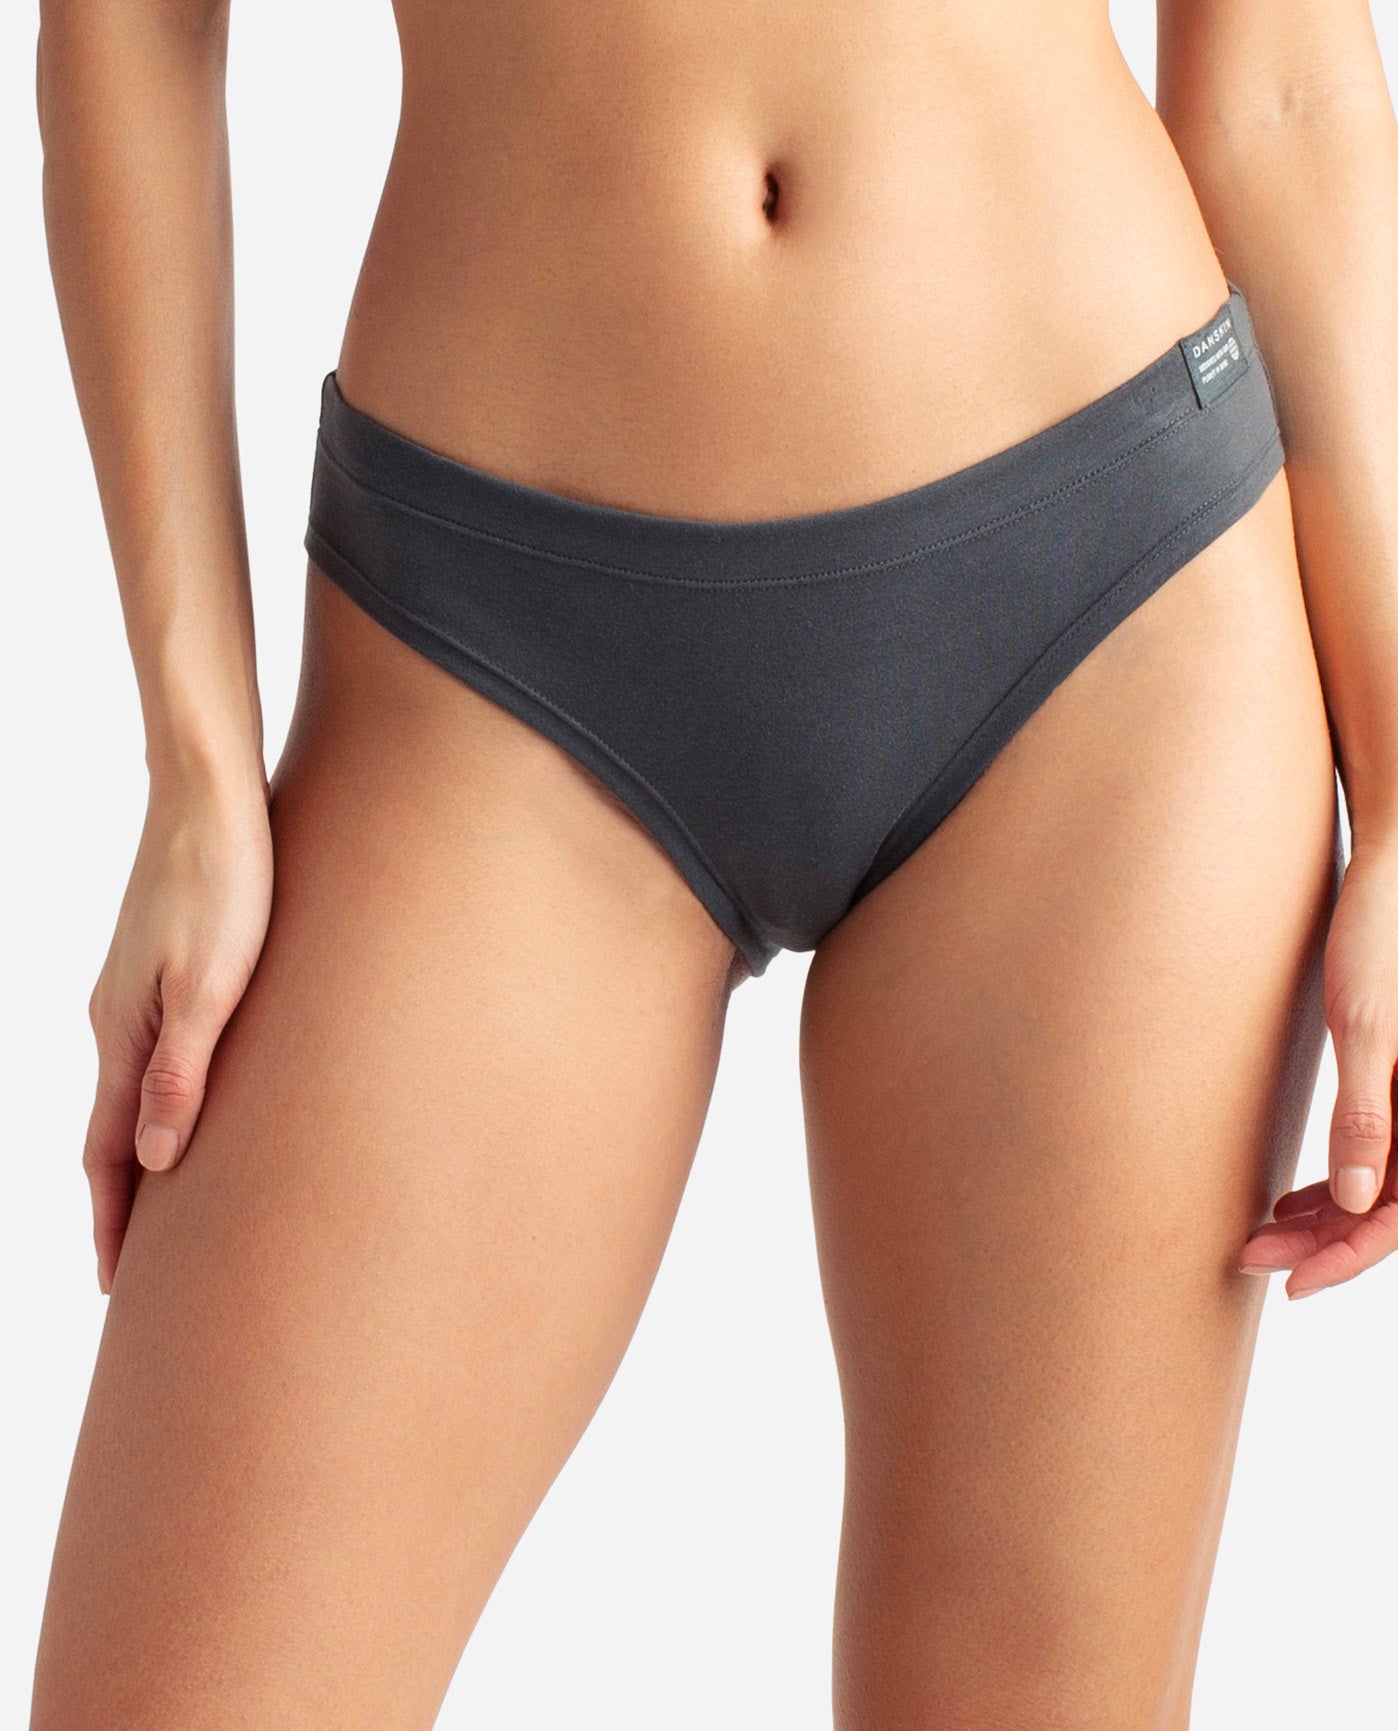 Danskin, Intimates & Sleepwear, Danskin Intimates Comfy Seamless Bikinis  Panties 5 Set Size Xl